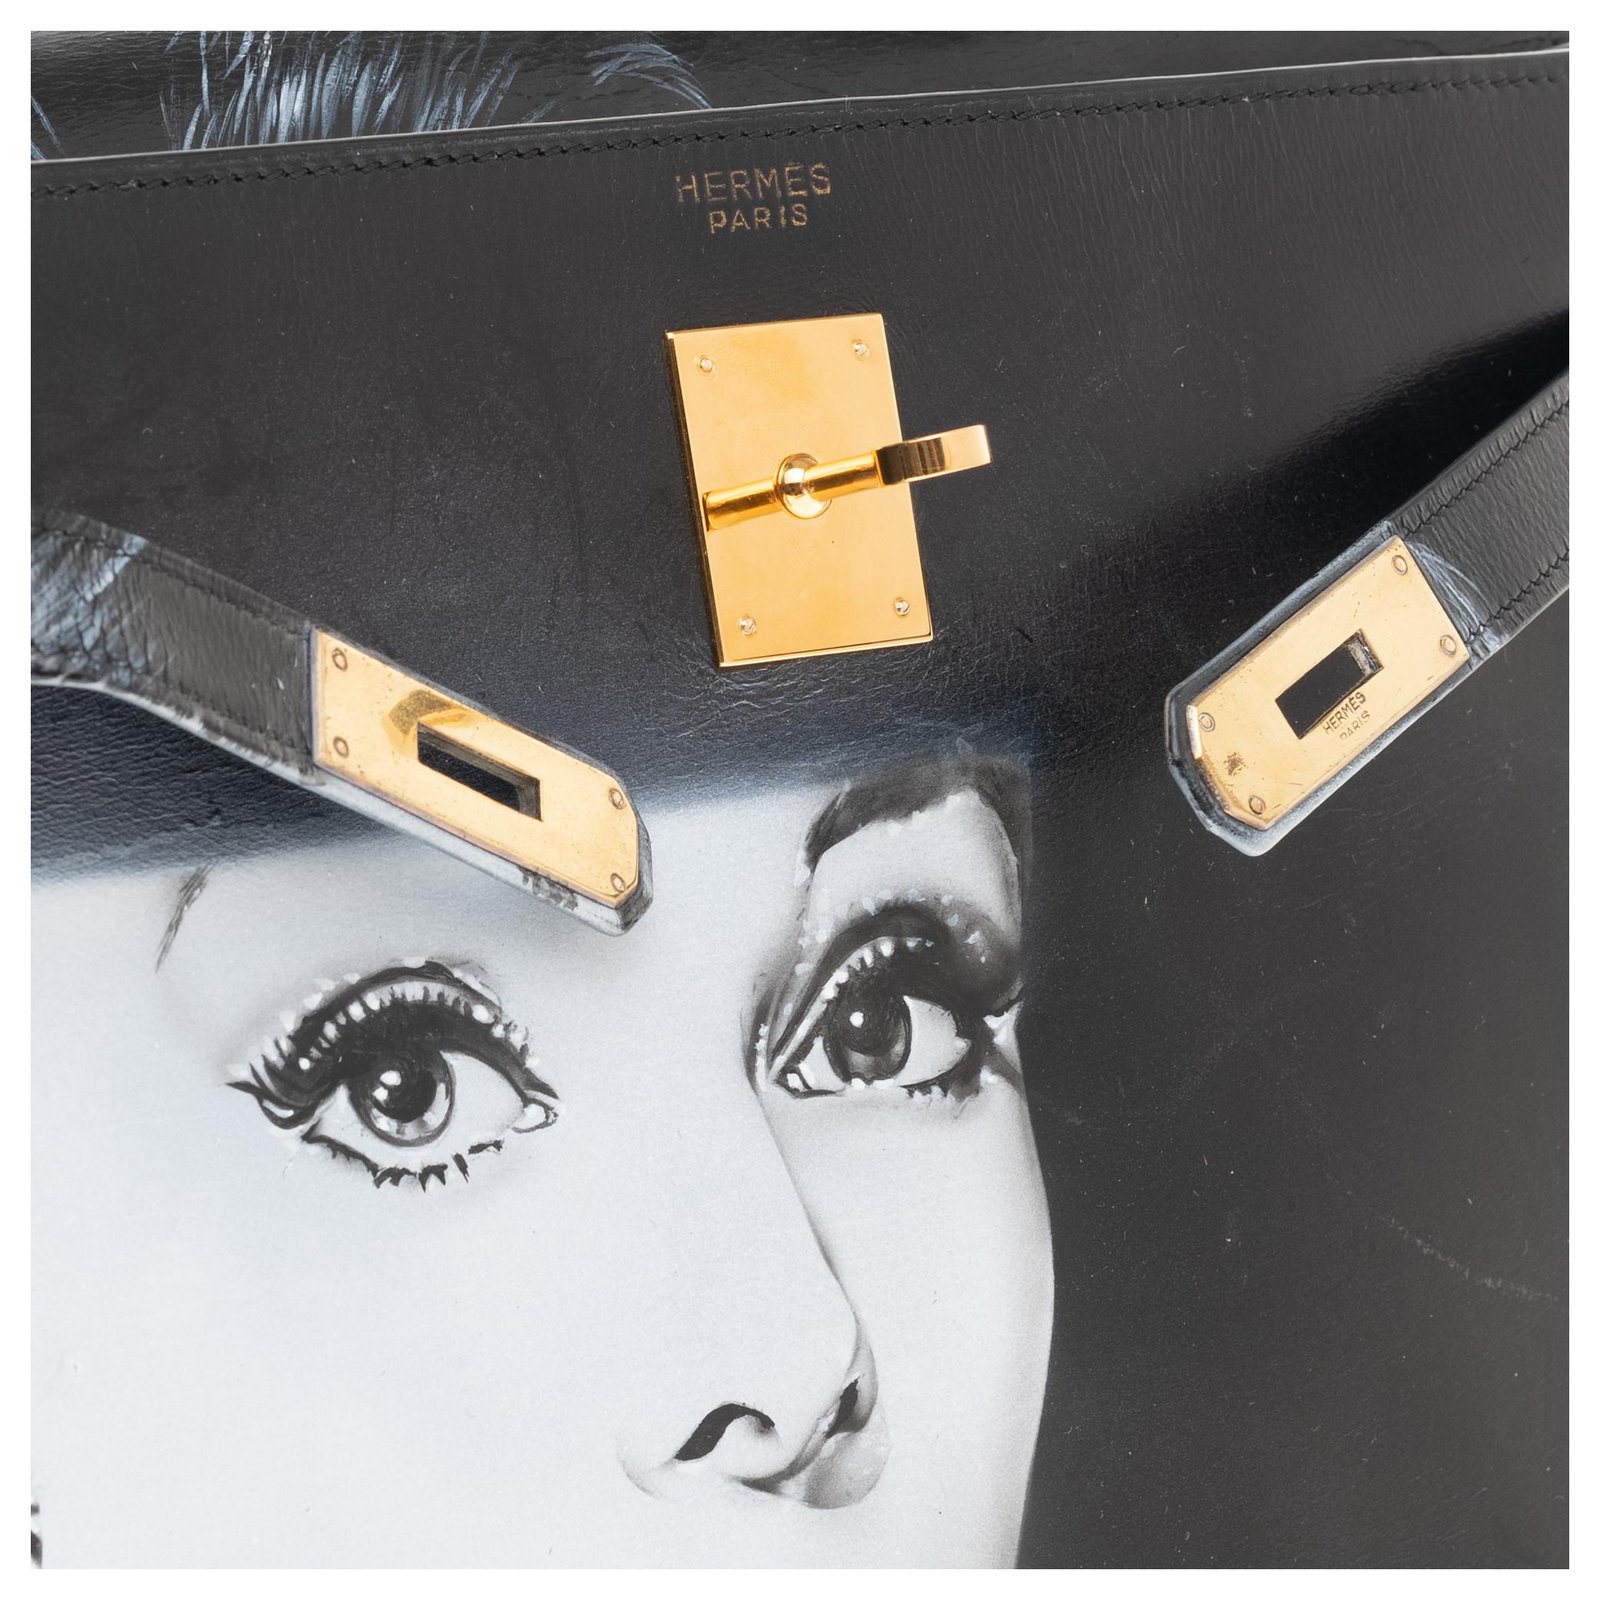 Hermès hermes kelly 32 saddle in black box Audrey Hepburn